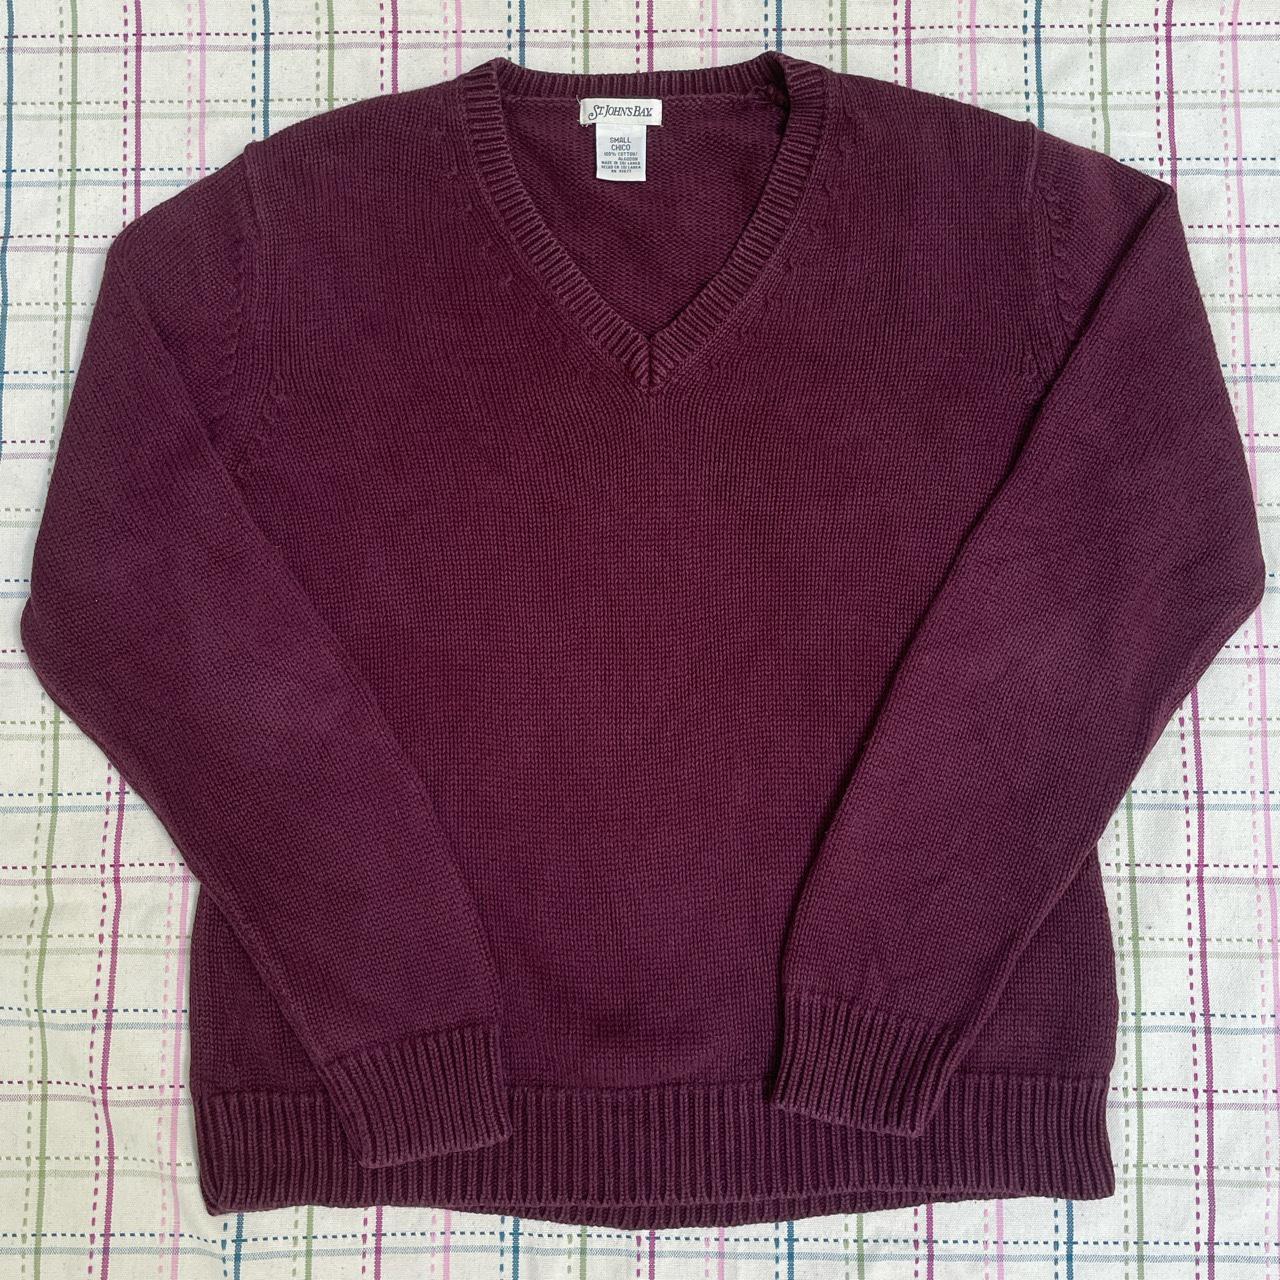 Vintage Maroon St. John’s Bay Knit Sweater • •... - Depop